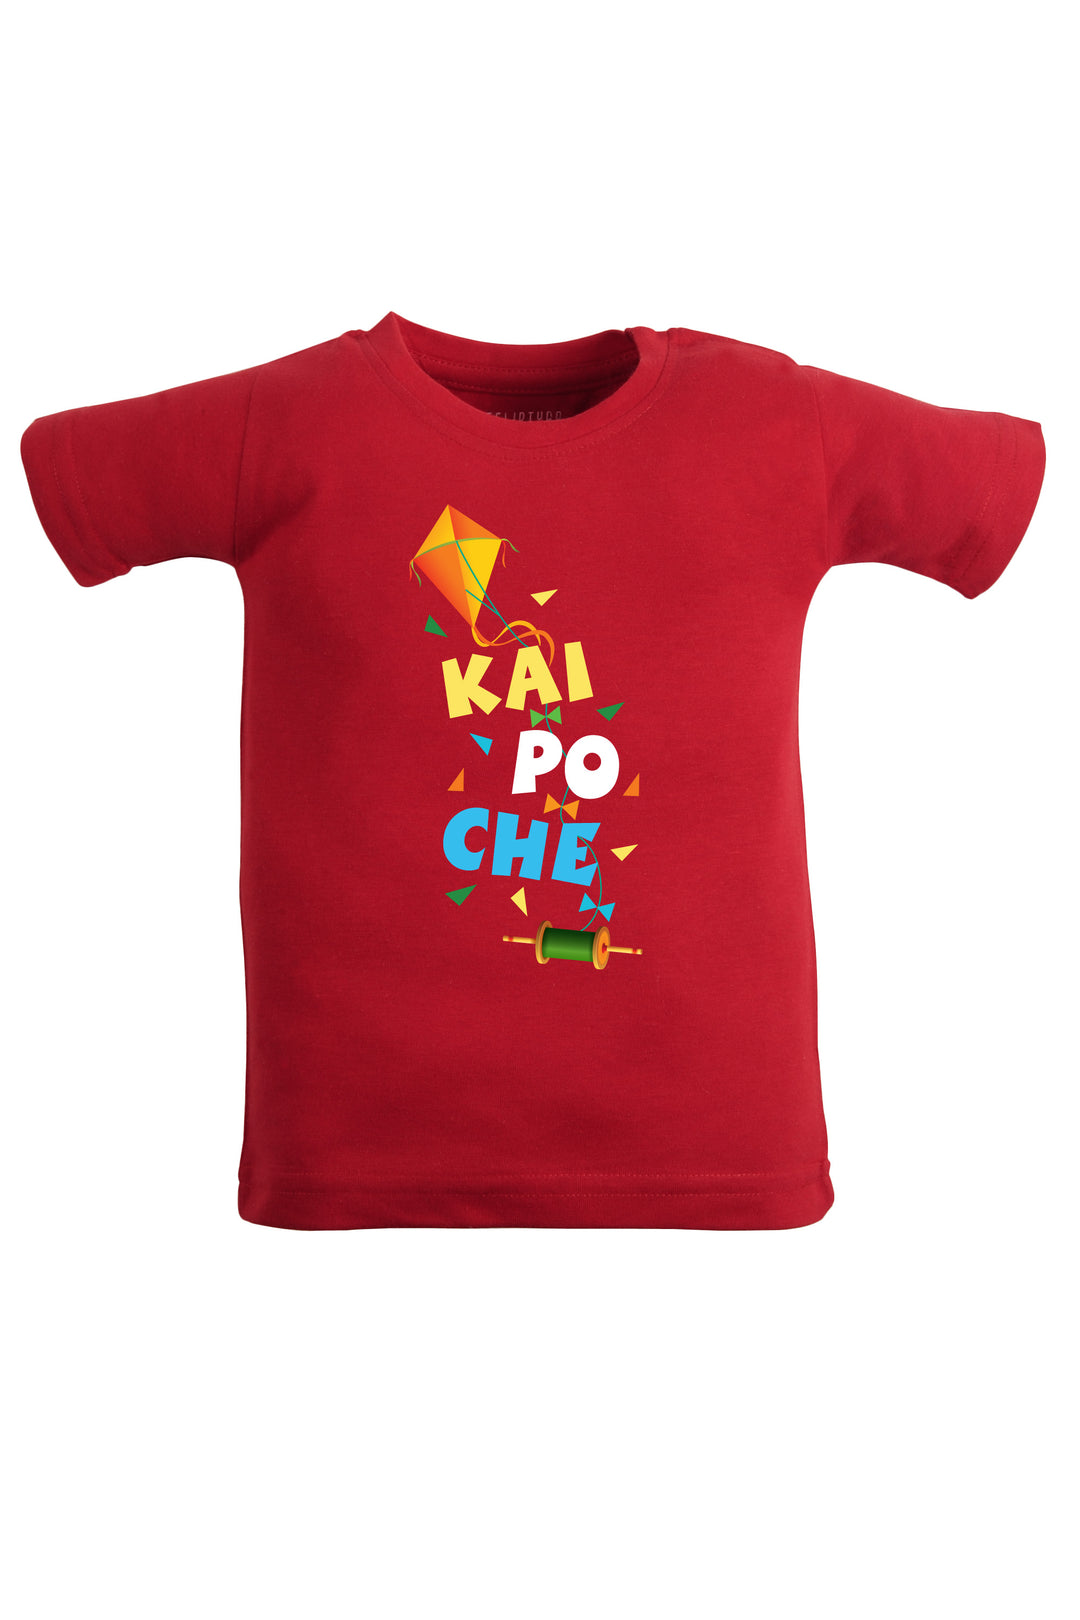 Kai Po Che